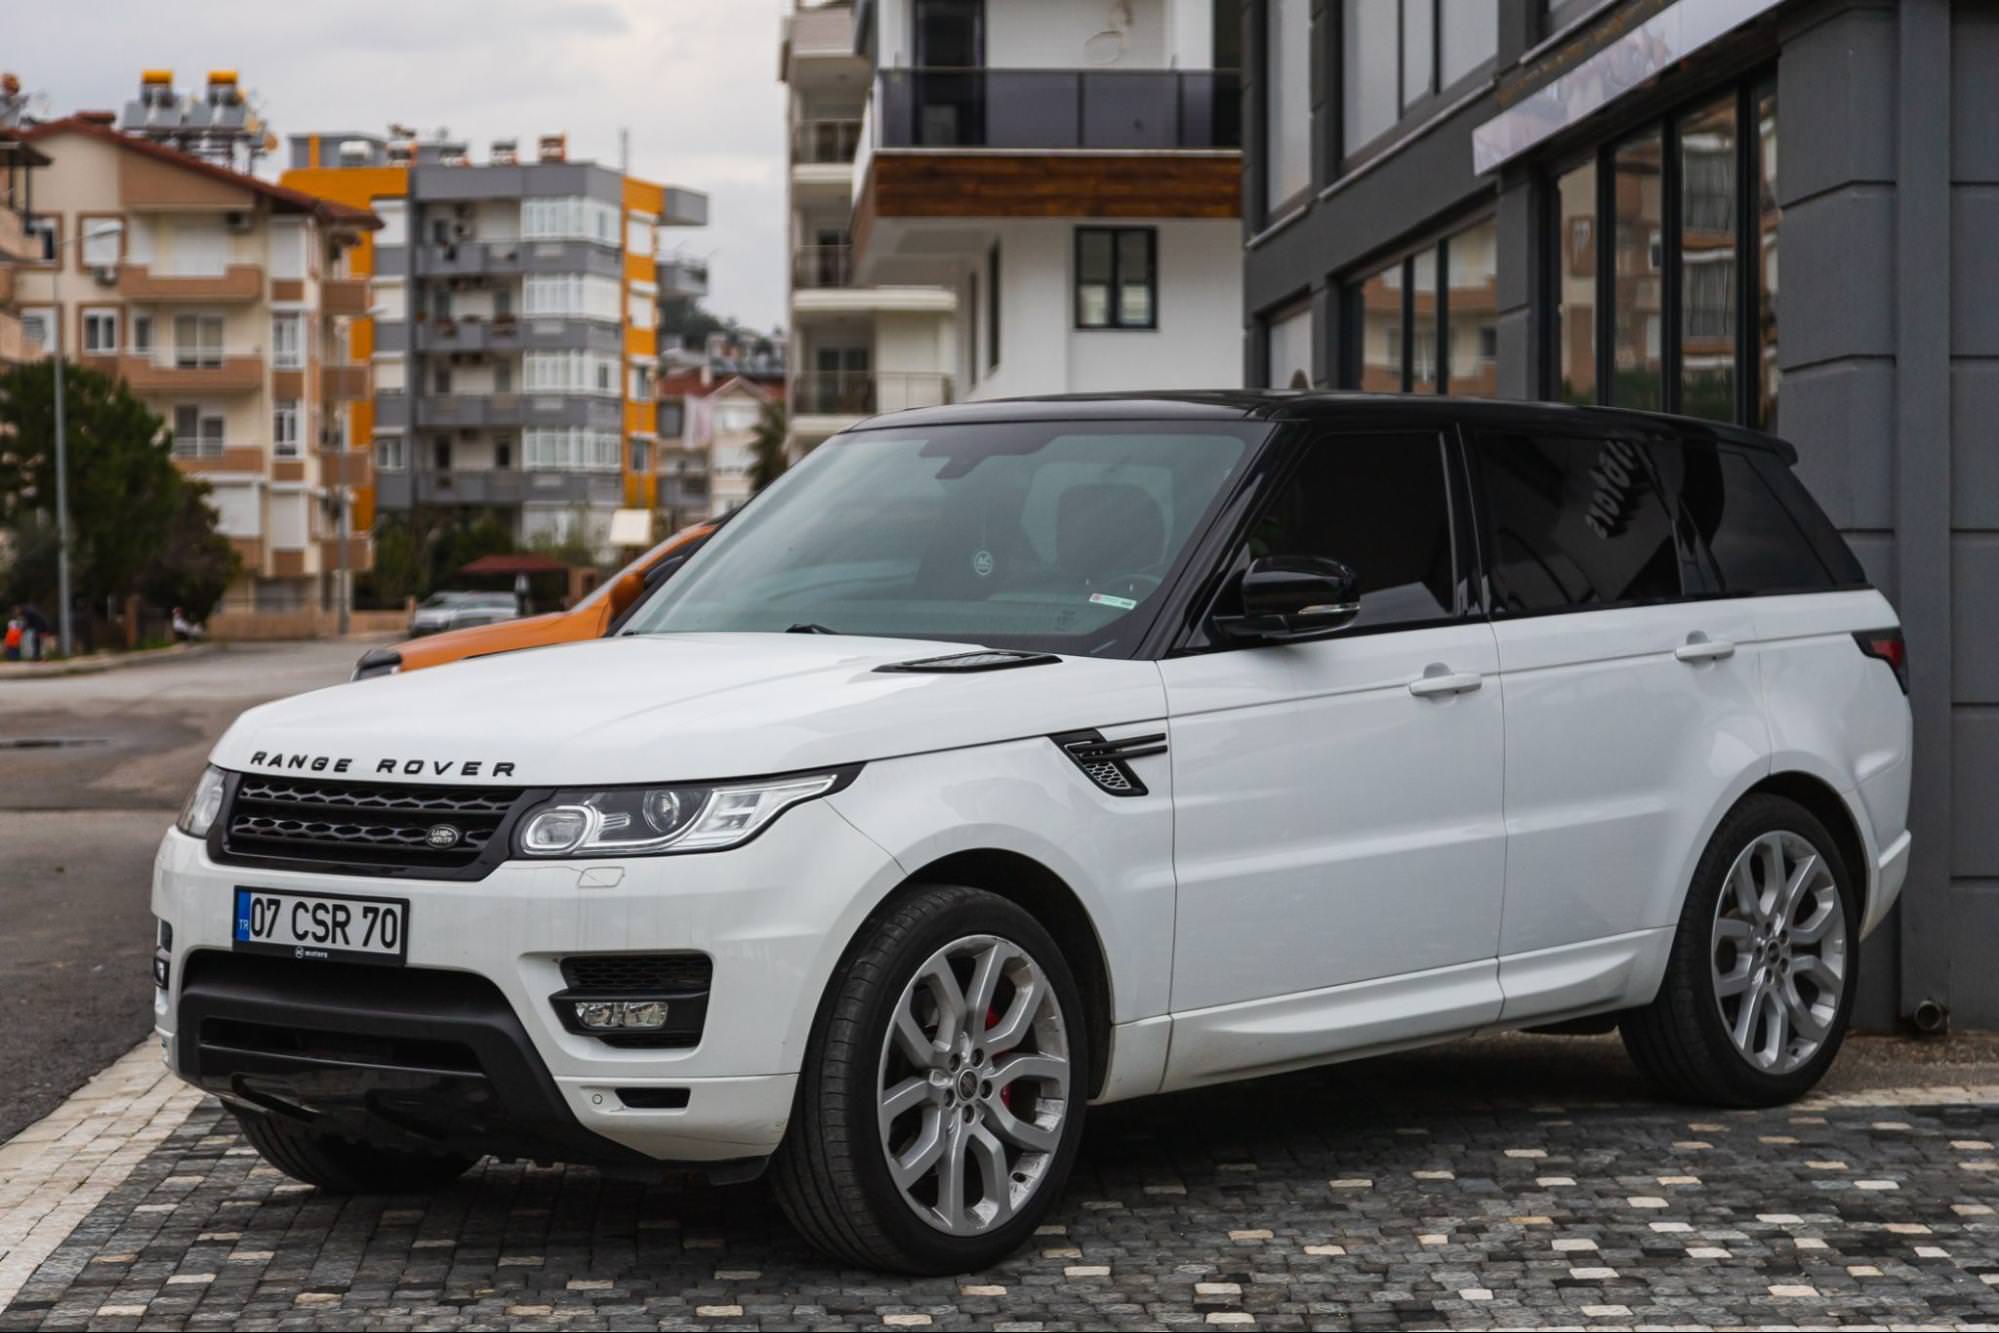 Weißer Land Rover Range Rover geparkt